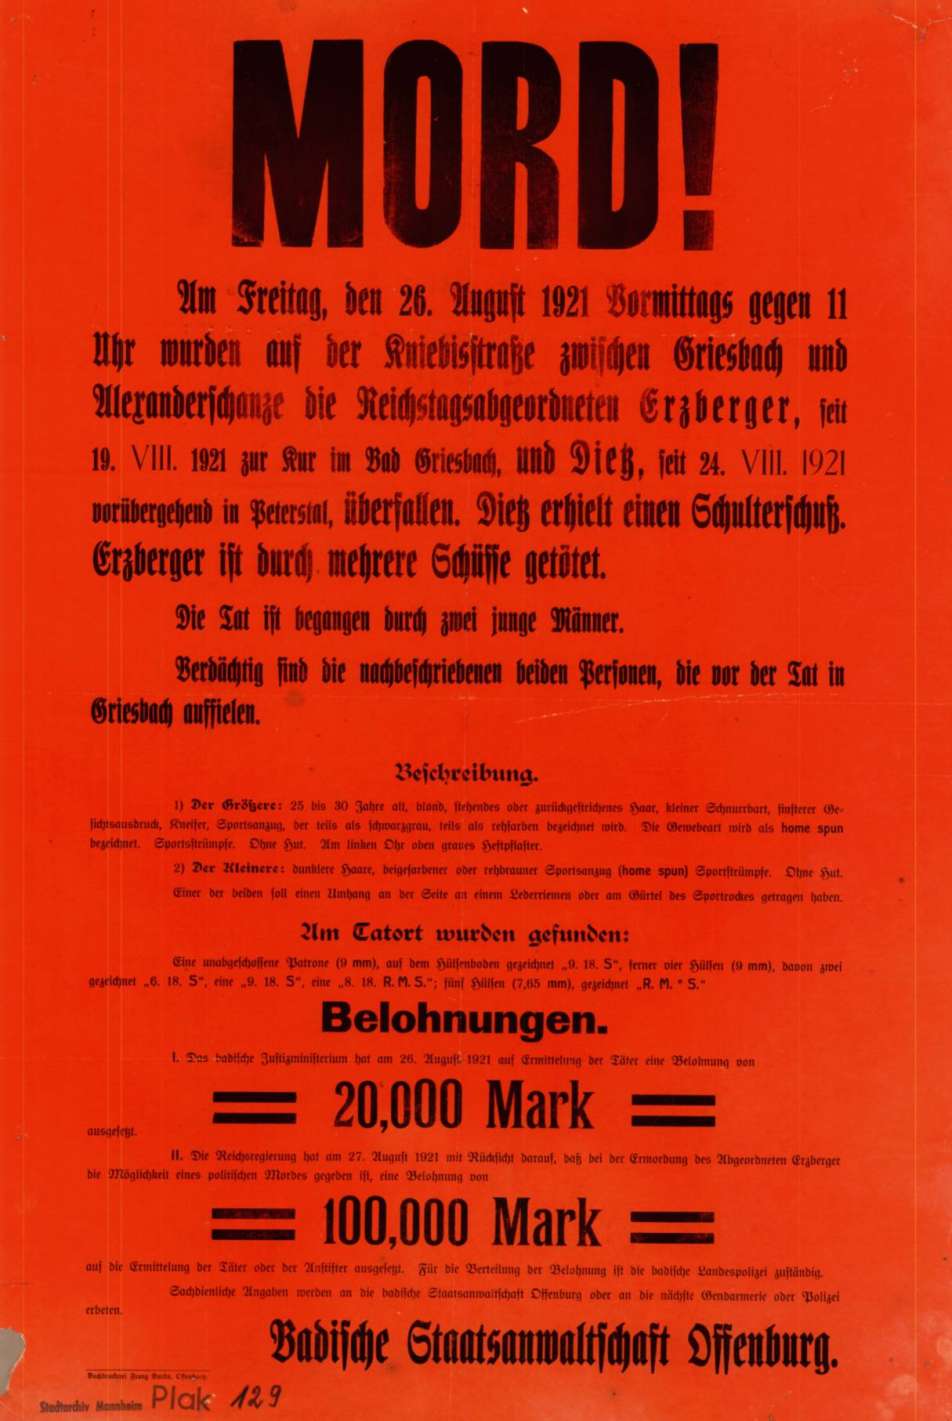 farbies Fahndungsplakat anlässlich der Ermordung von Matthias Erzberger, 1921